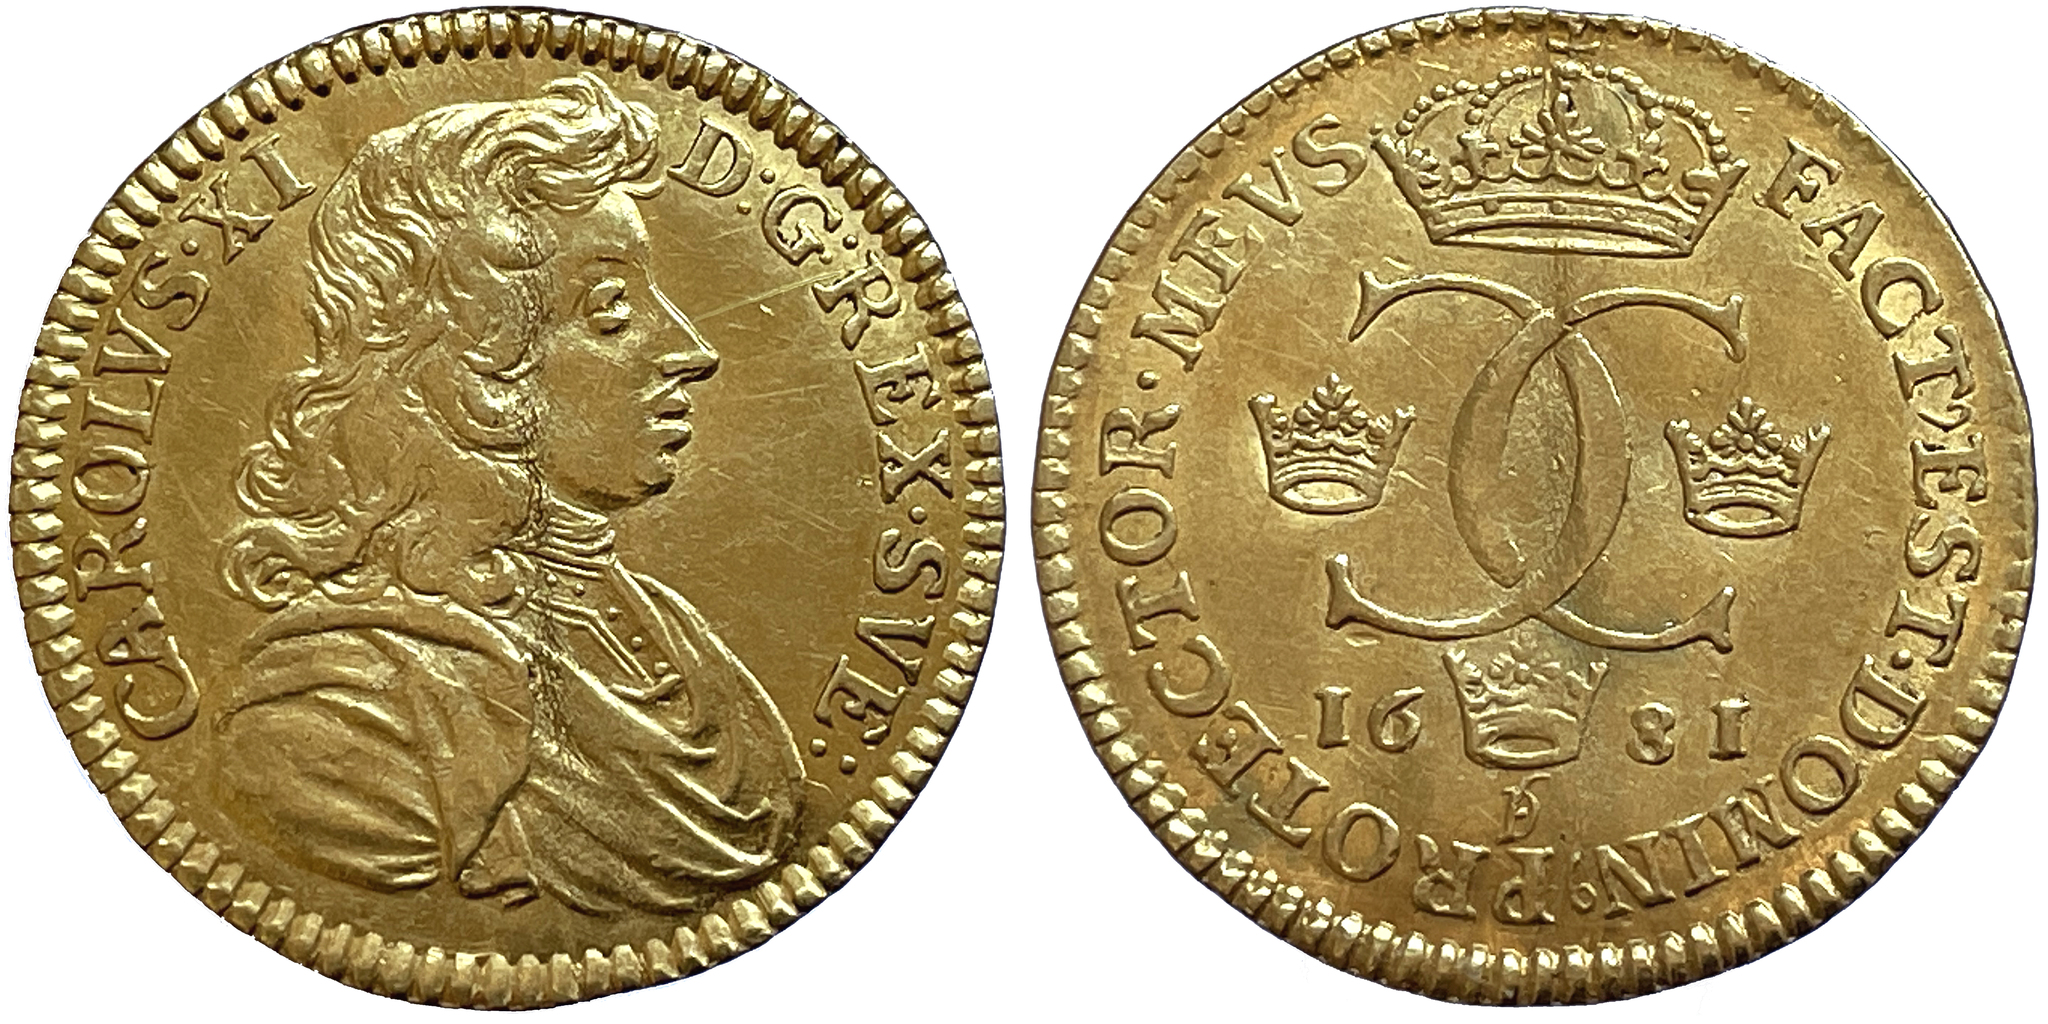 Karl XI - Dukat 1681 - 6 Kända exemplar i privat ägo - Tilltalande exemplar med glans - RR